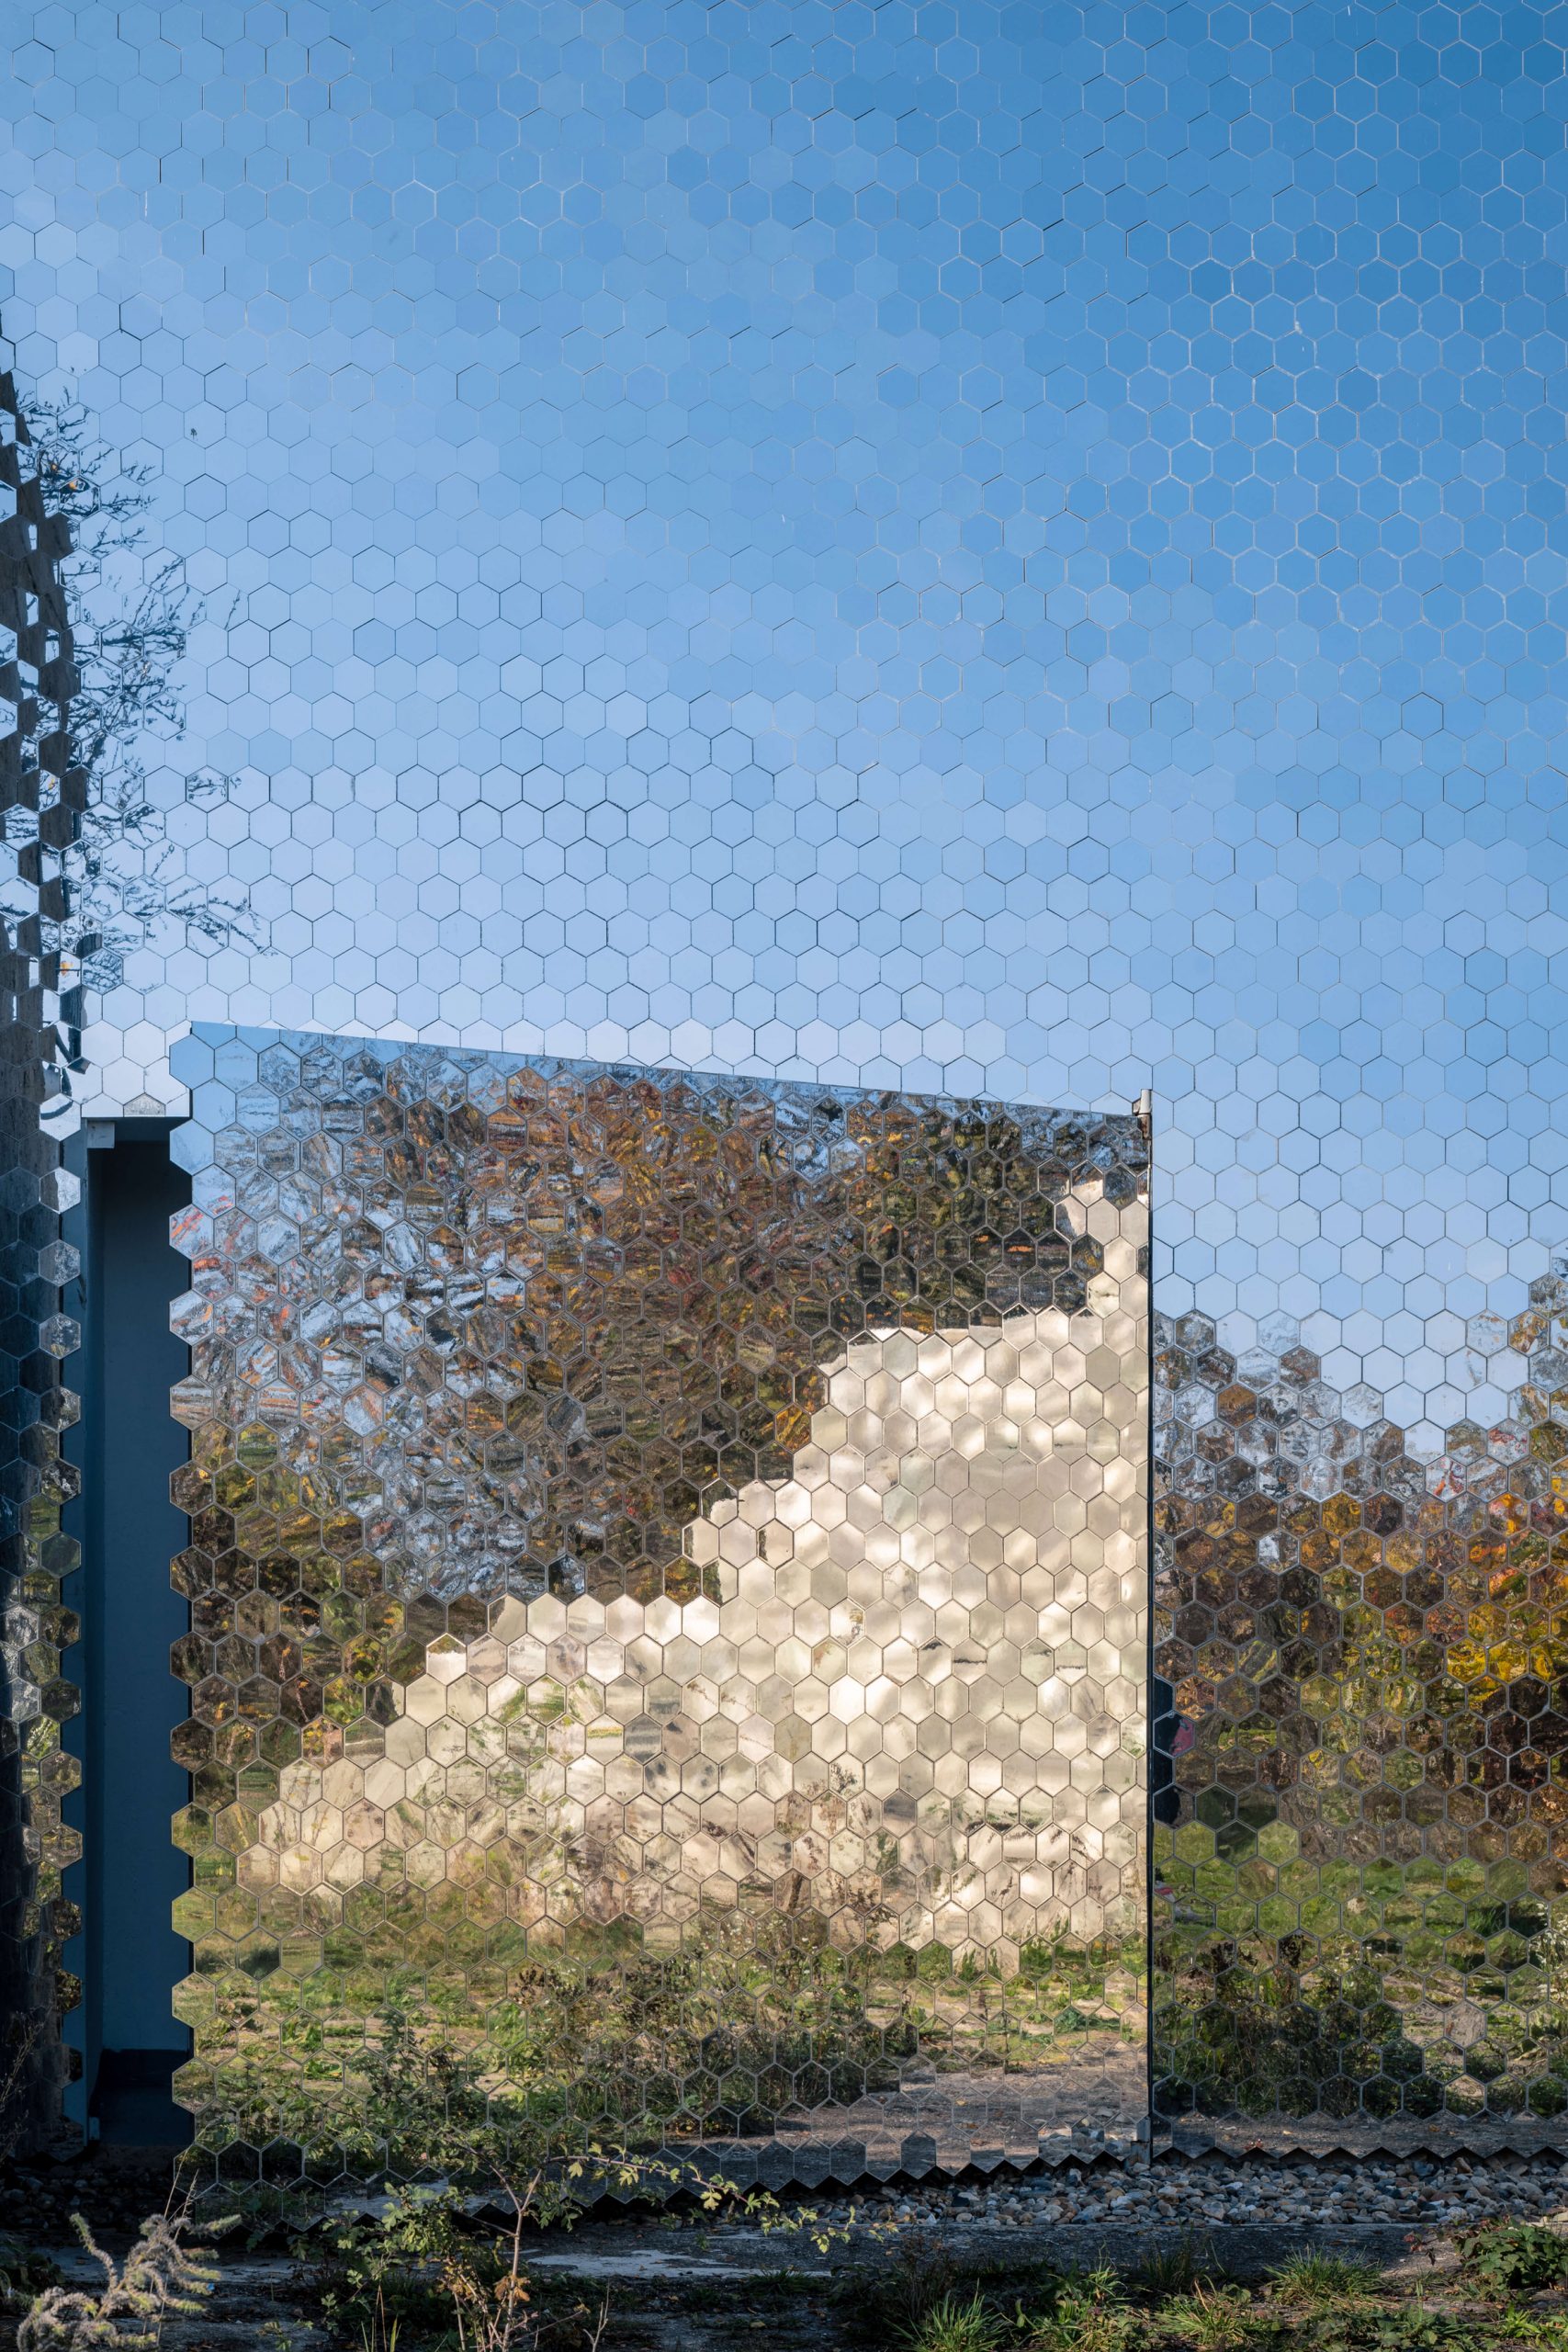 Mirrored facade at pet crematorium